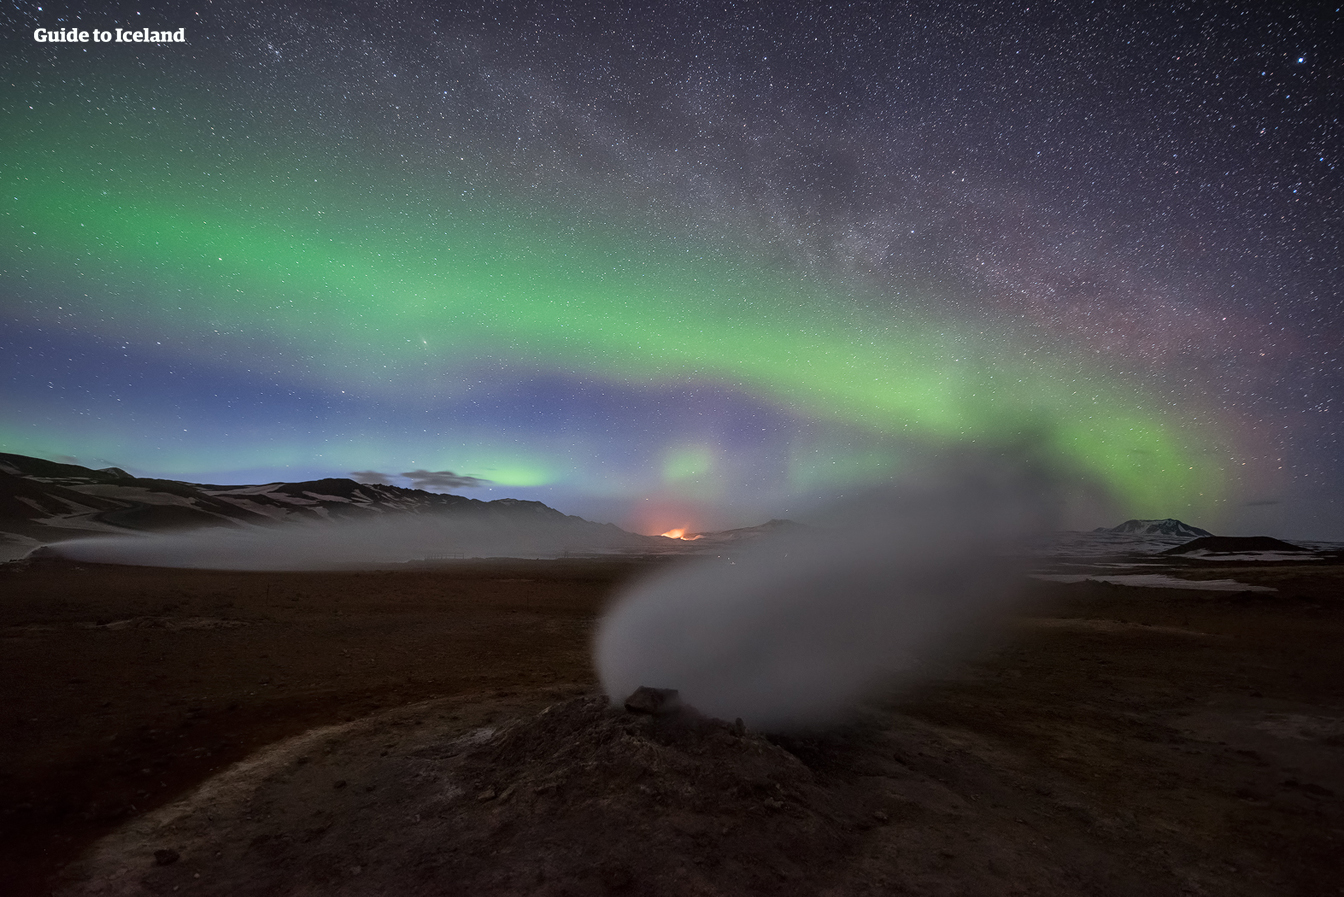 Las auroras boreales bailan sobre el cielo en el lago Mývatn, en el norte de Islandia.